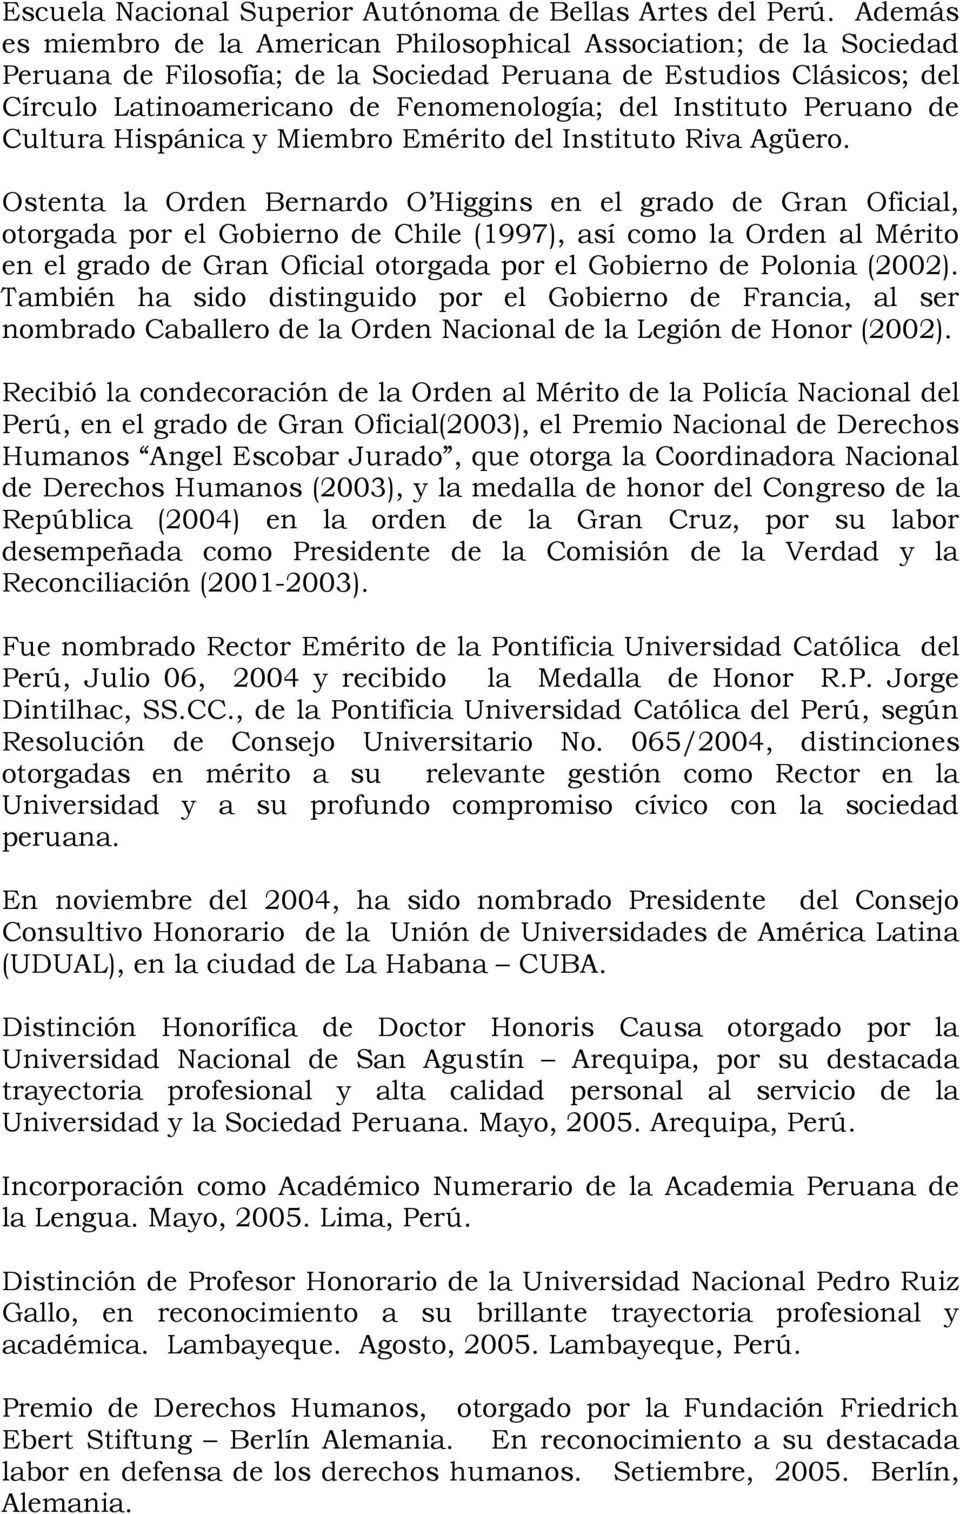 Instituto Peruano de Cultura Hispánica y Miembro Emérito del Instituto Riva Agüero.